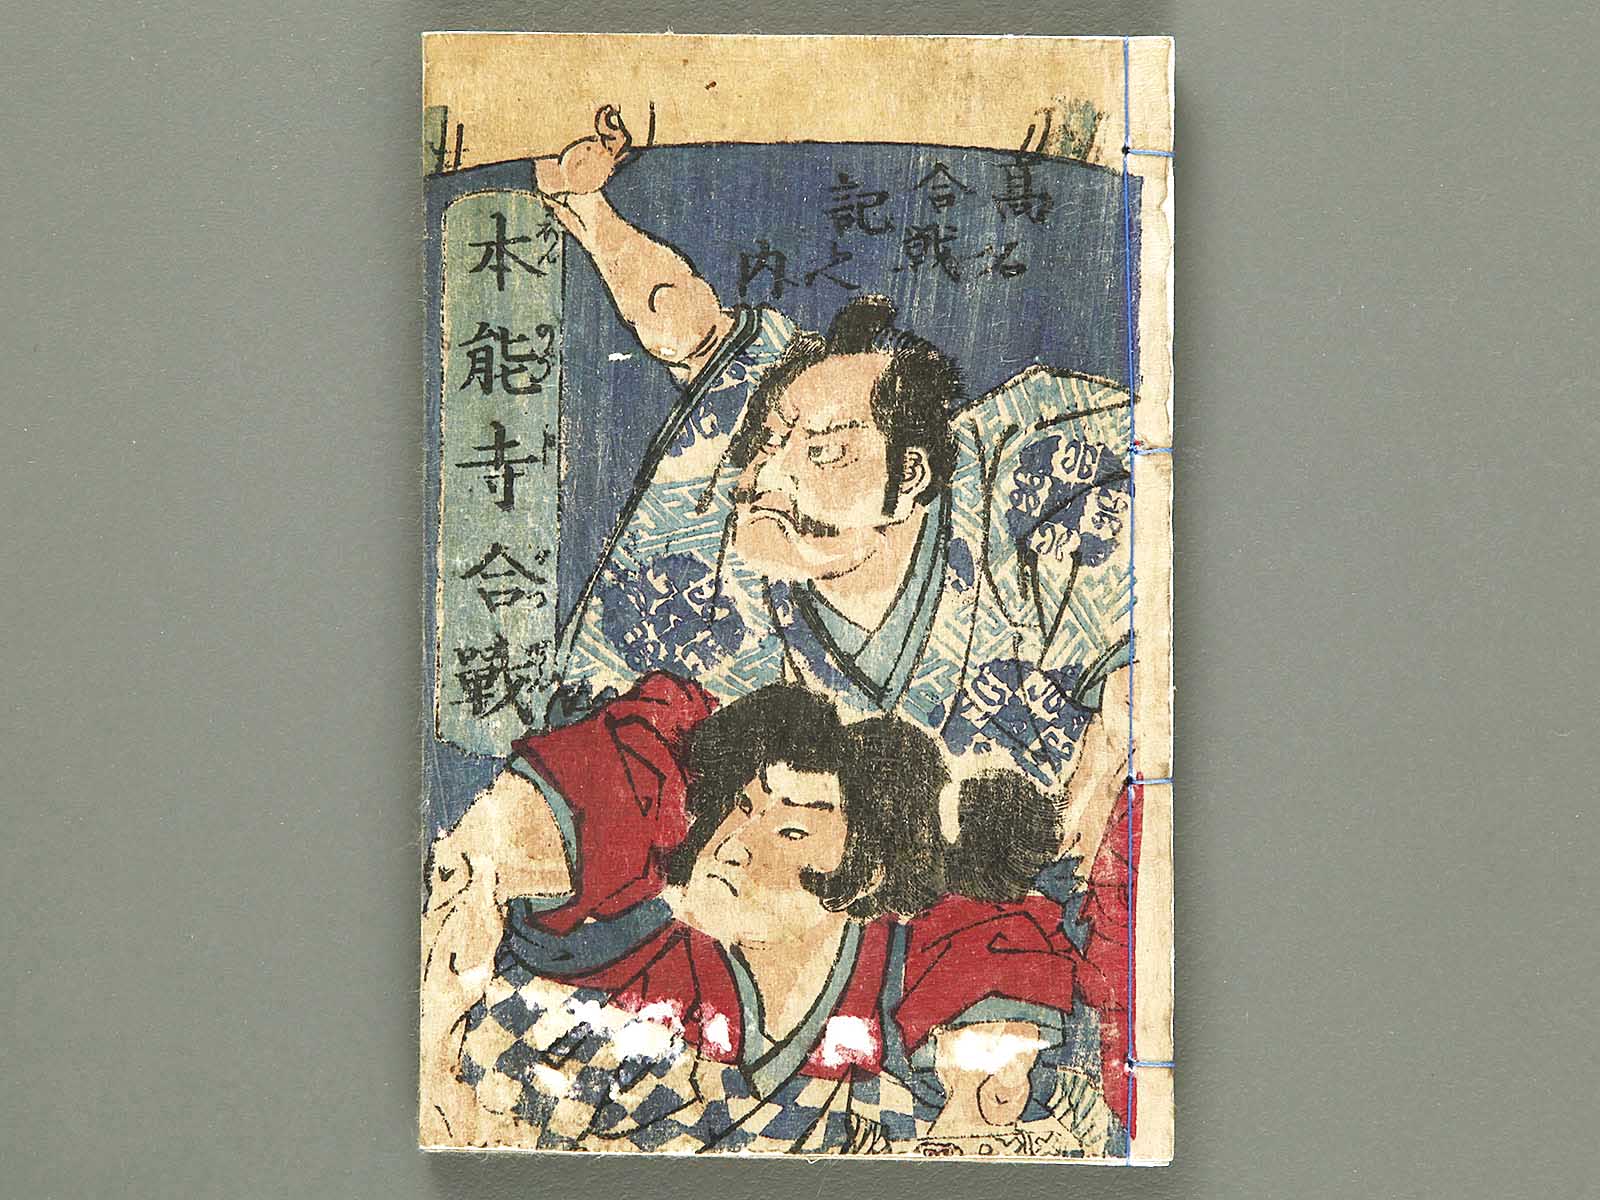 Honnoji kassen by Utagawa Yoshitora / BJ289-289 – NIHONKOSHO